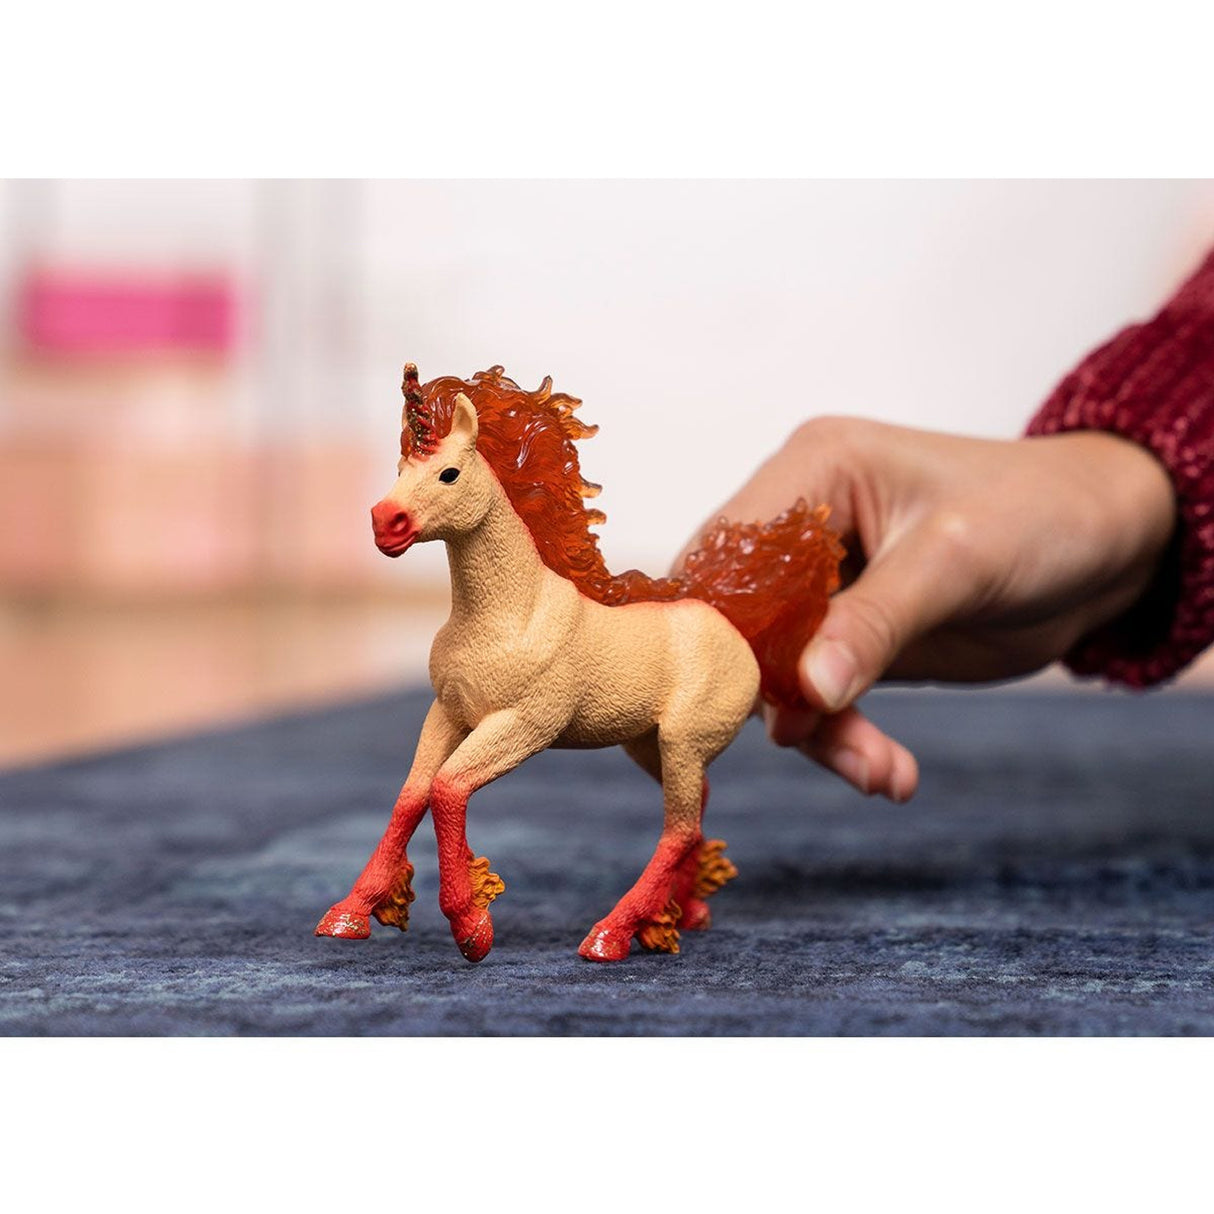 Schleich Elementa Fire Unicorn Stallion Animal Toy